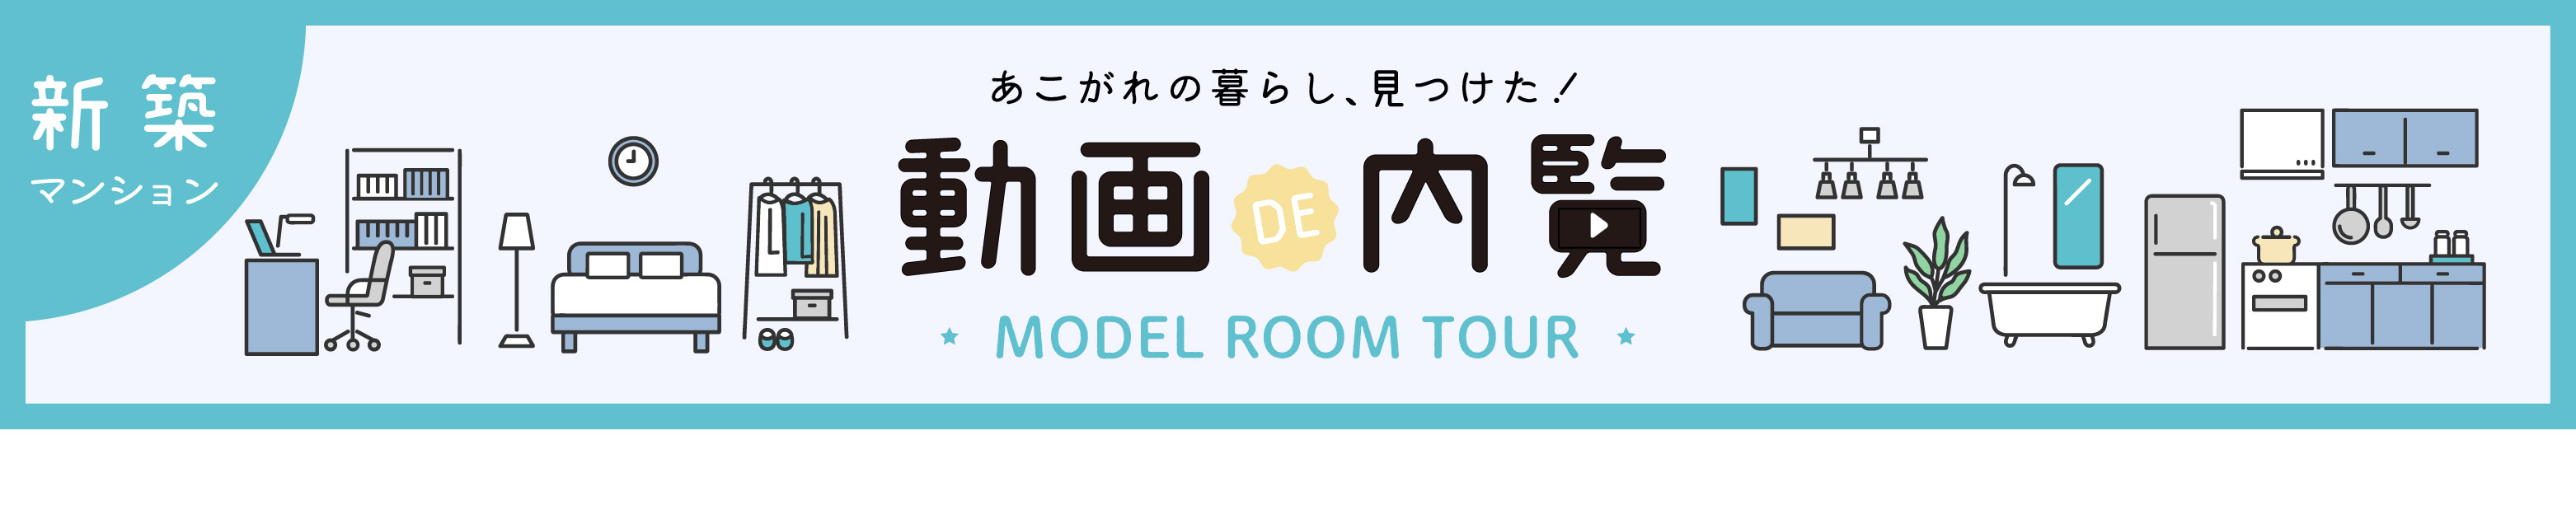 【新築マンション】動画で内覧 MODEL ROOM TOUR